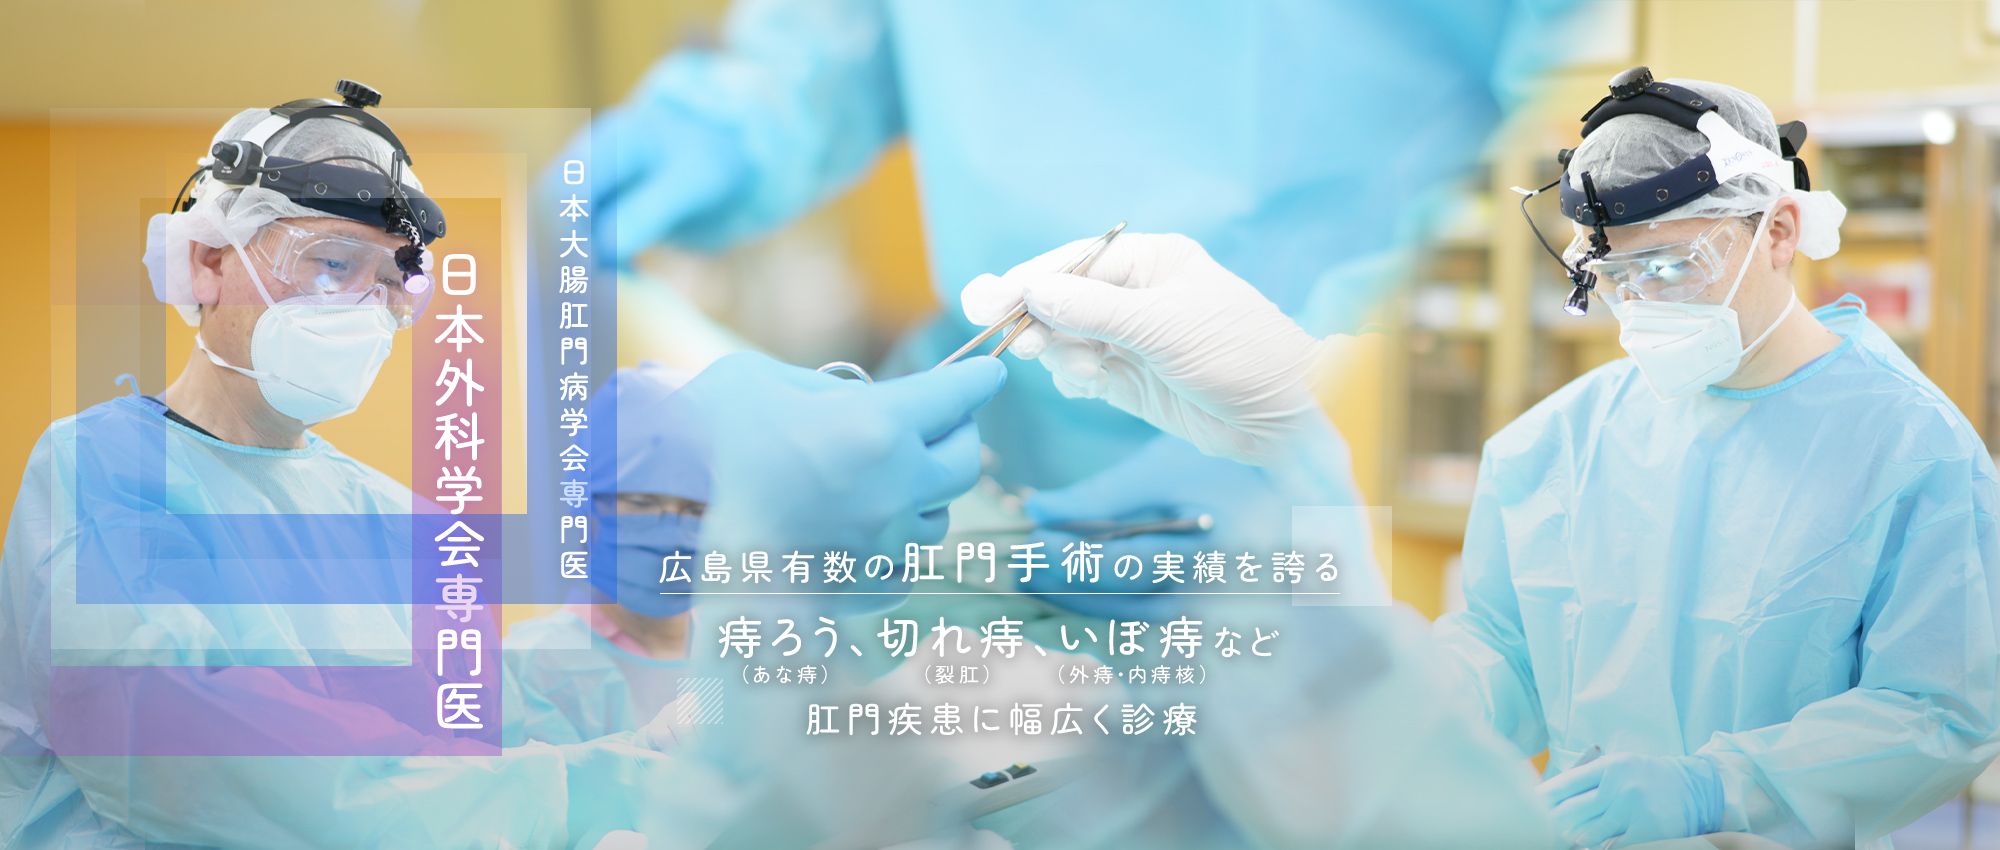 日本大腸肛門病学会専門医 日本外科学会専門医 広島県有数の肛門手術の実績を誇る痔ろう、切れ痔、いぼ痔など肛門疾患に幅広く診療